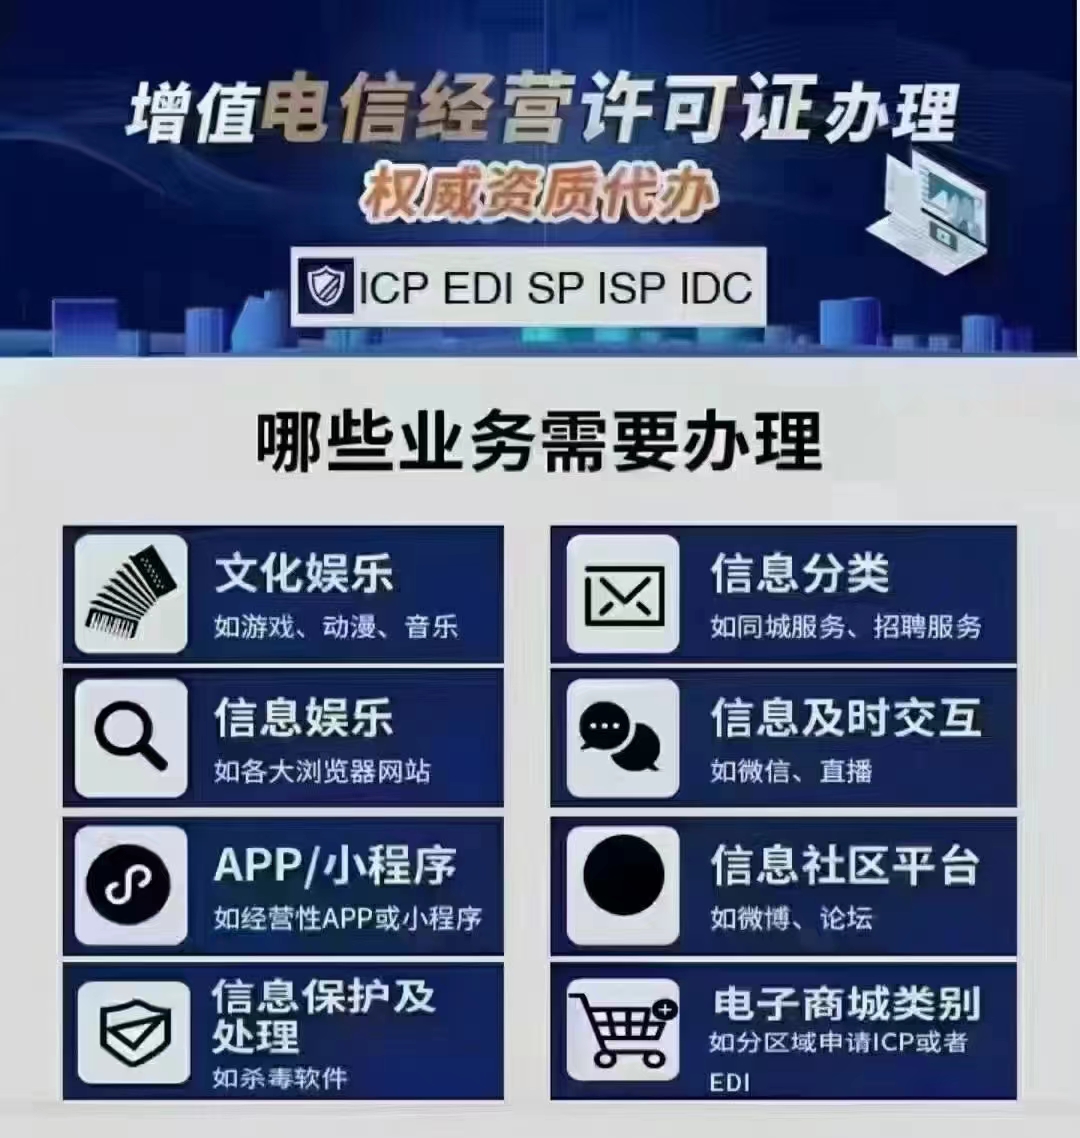 北京市西城区自营电商平台需要办理ICP许可证吗